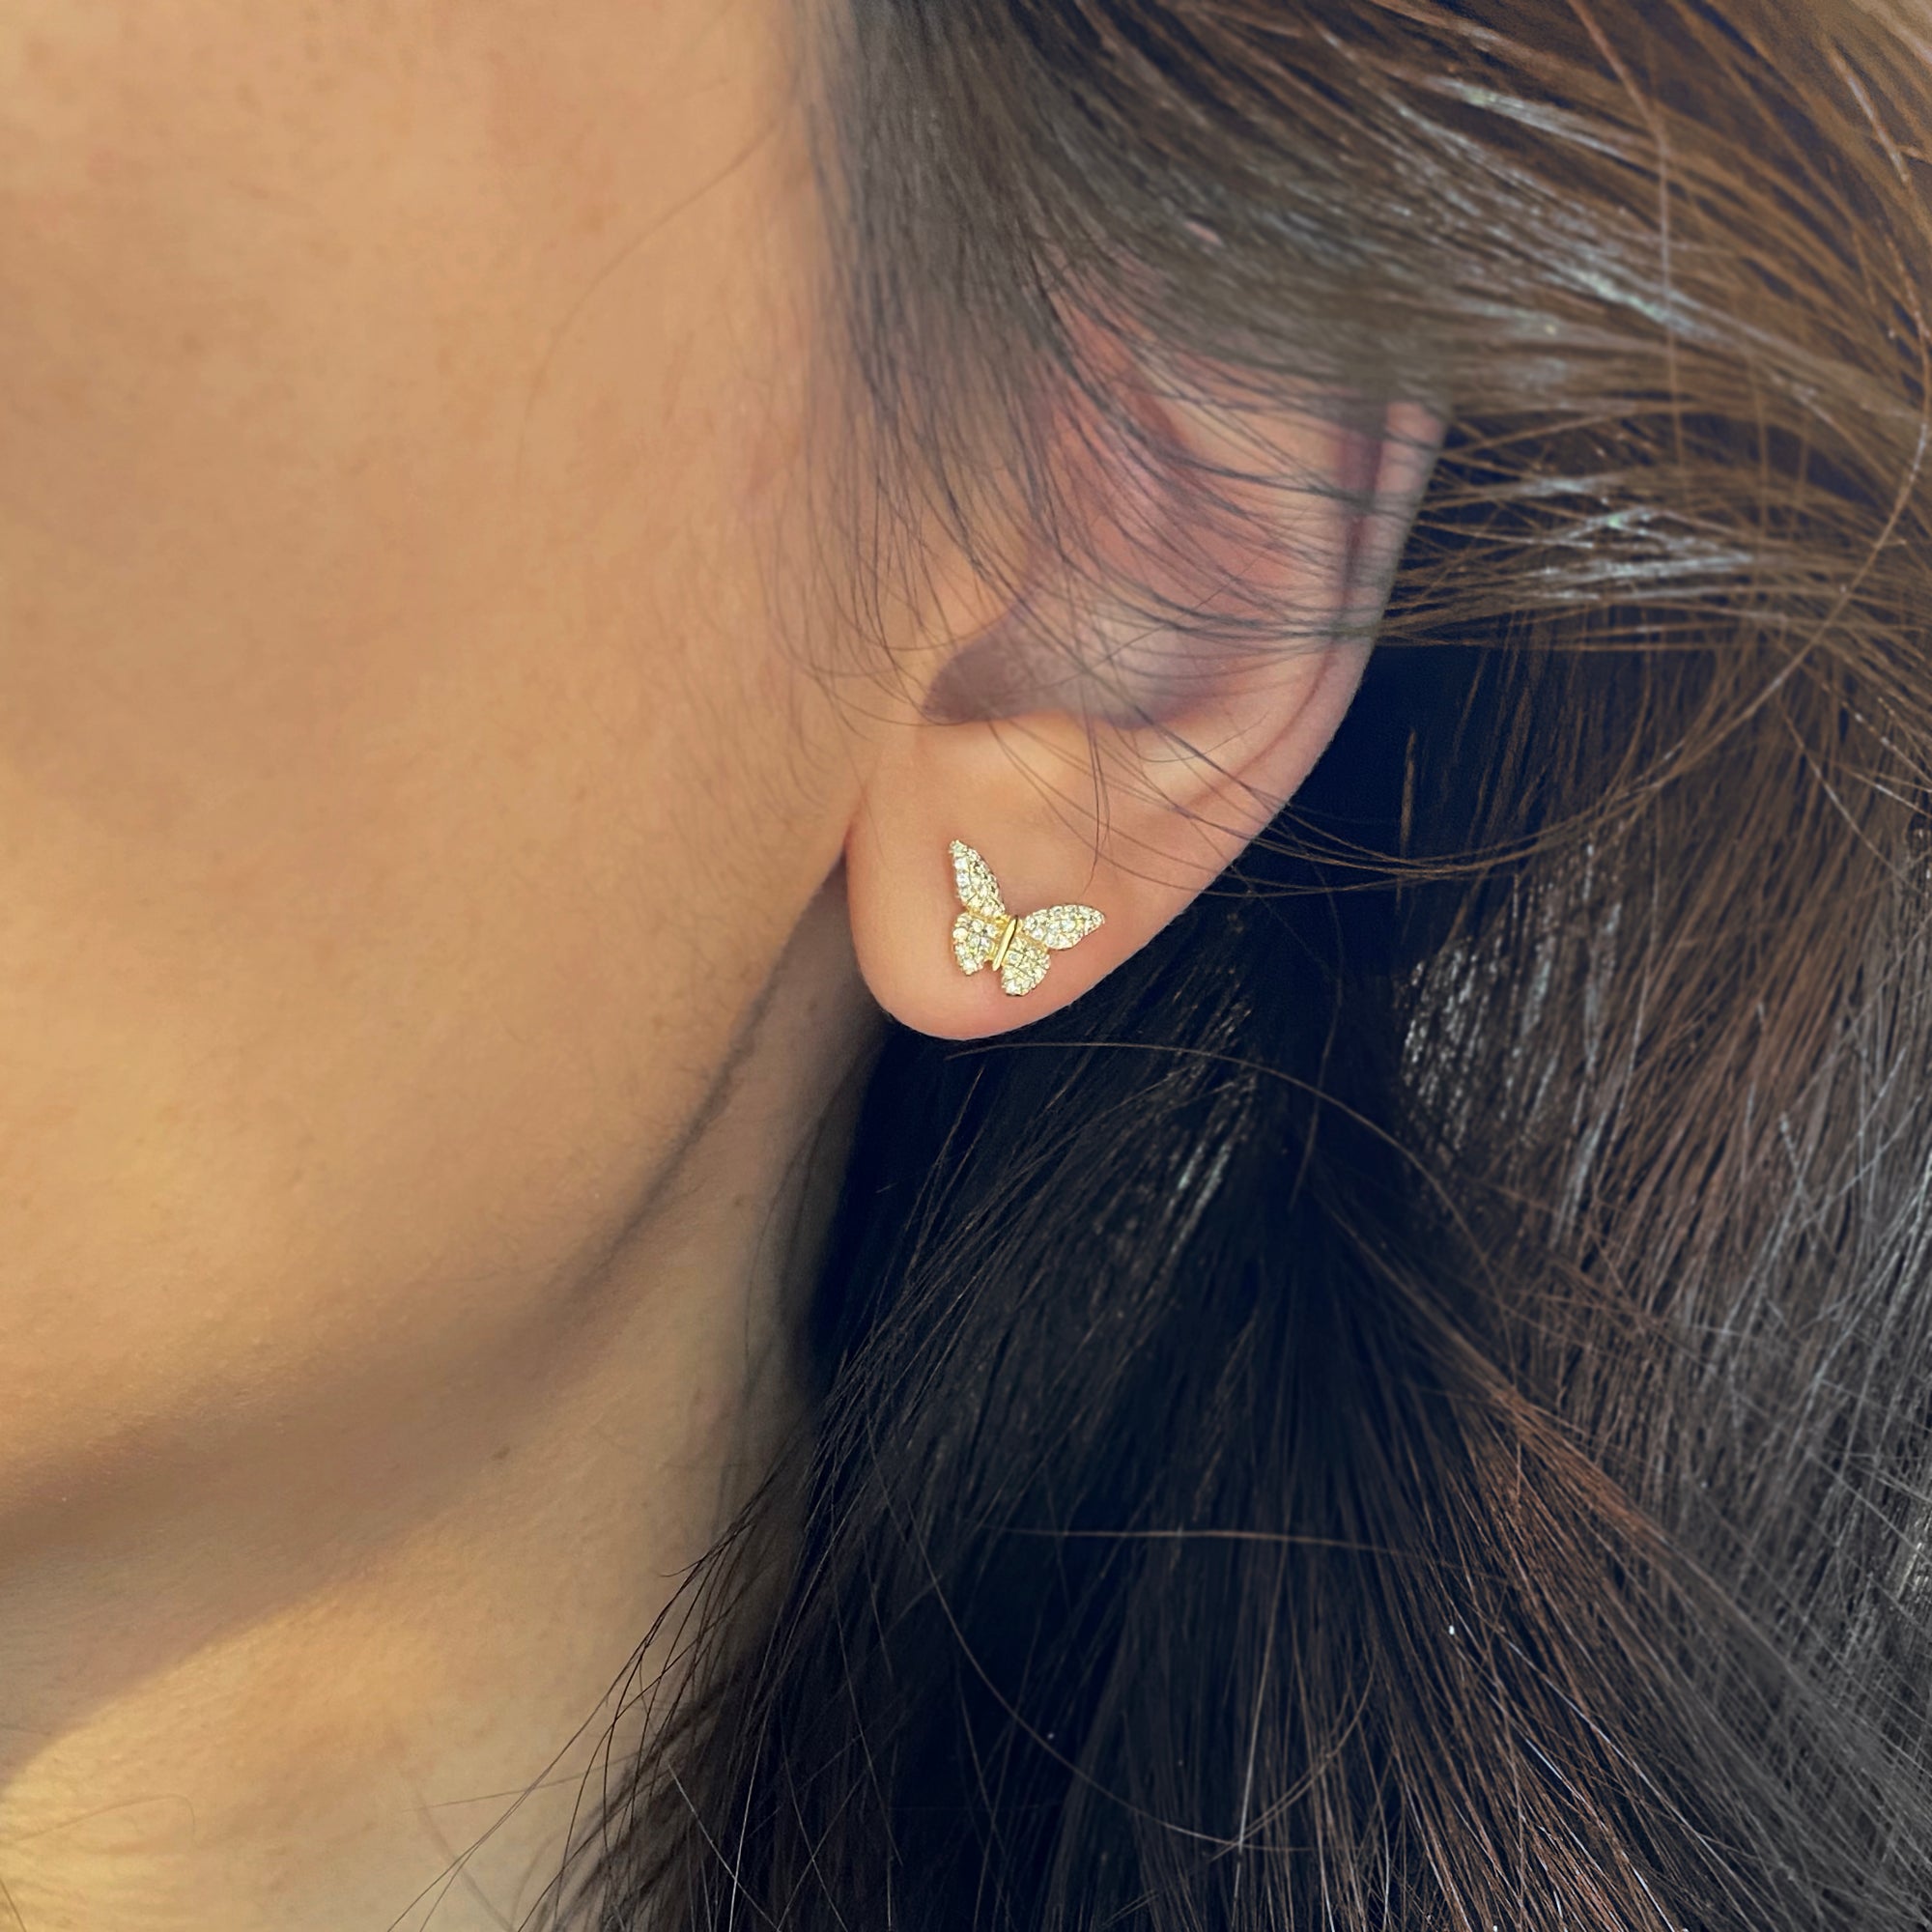 butterfly stud earrings with diamonds in 14k gold